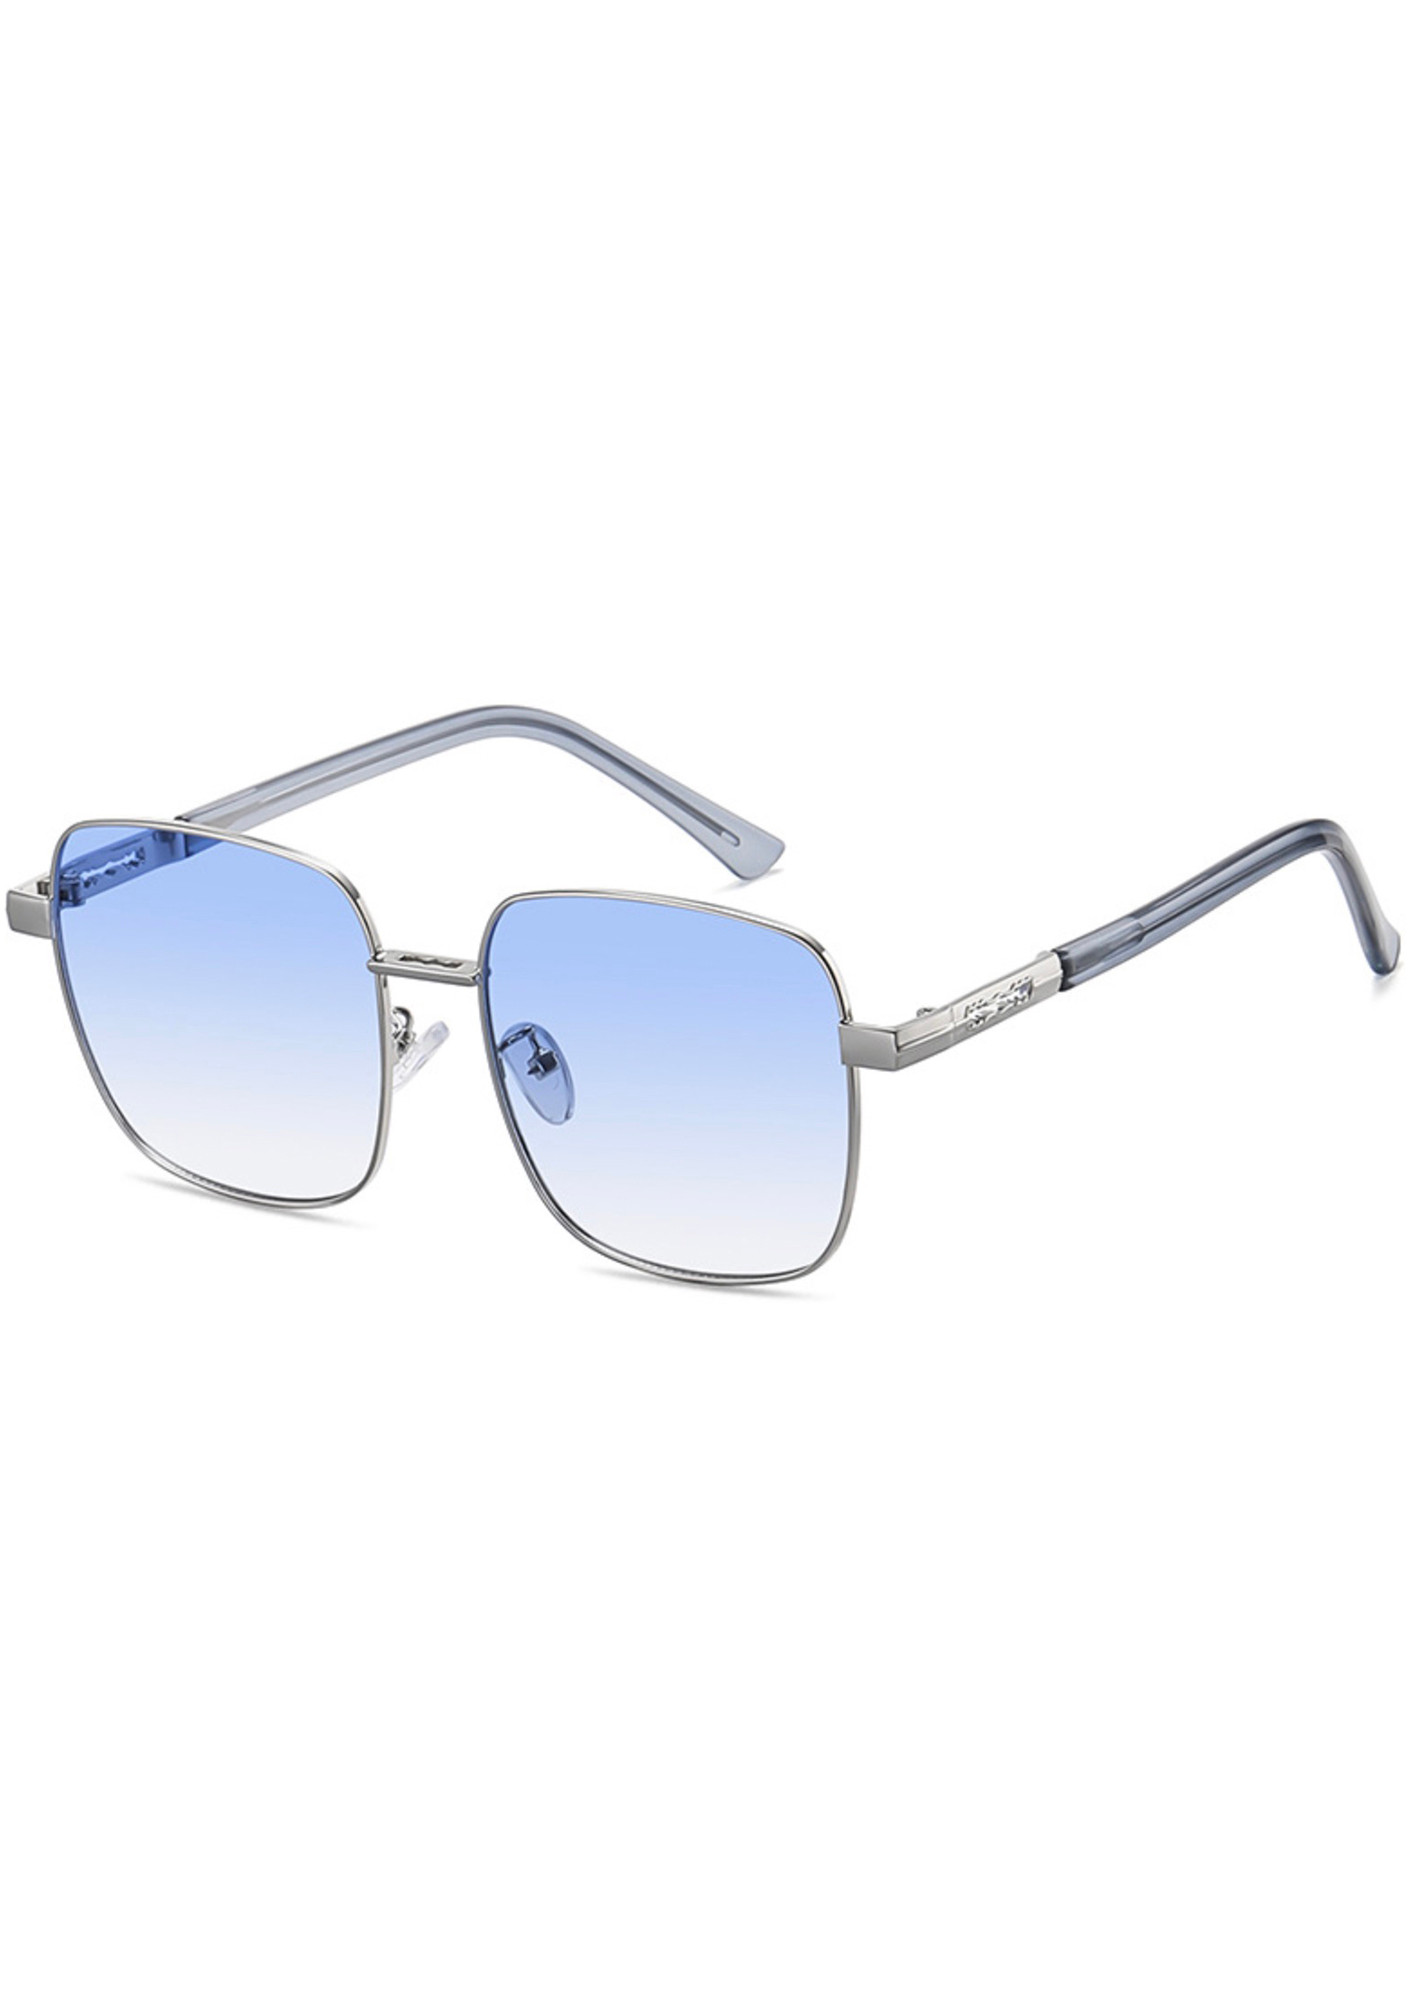 Redex Sky-Blue Color Aviator Sunglasses For Unisex (1363) | Dealsmagnet.com